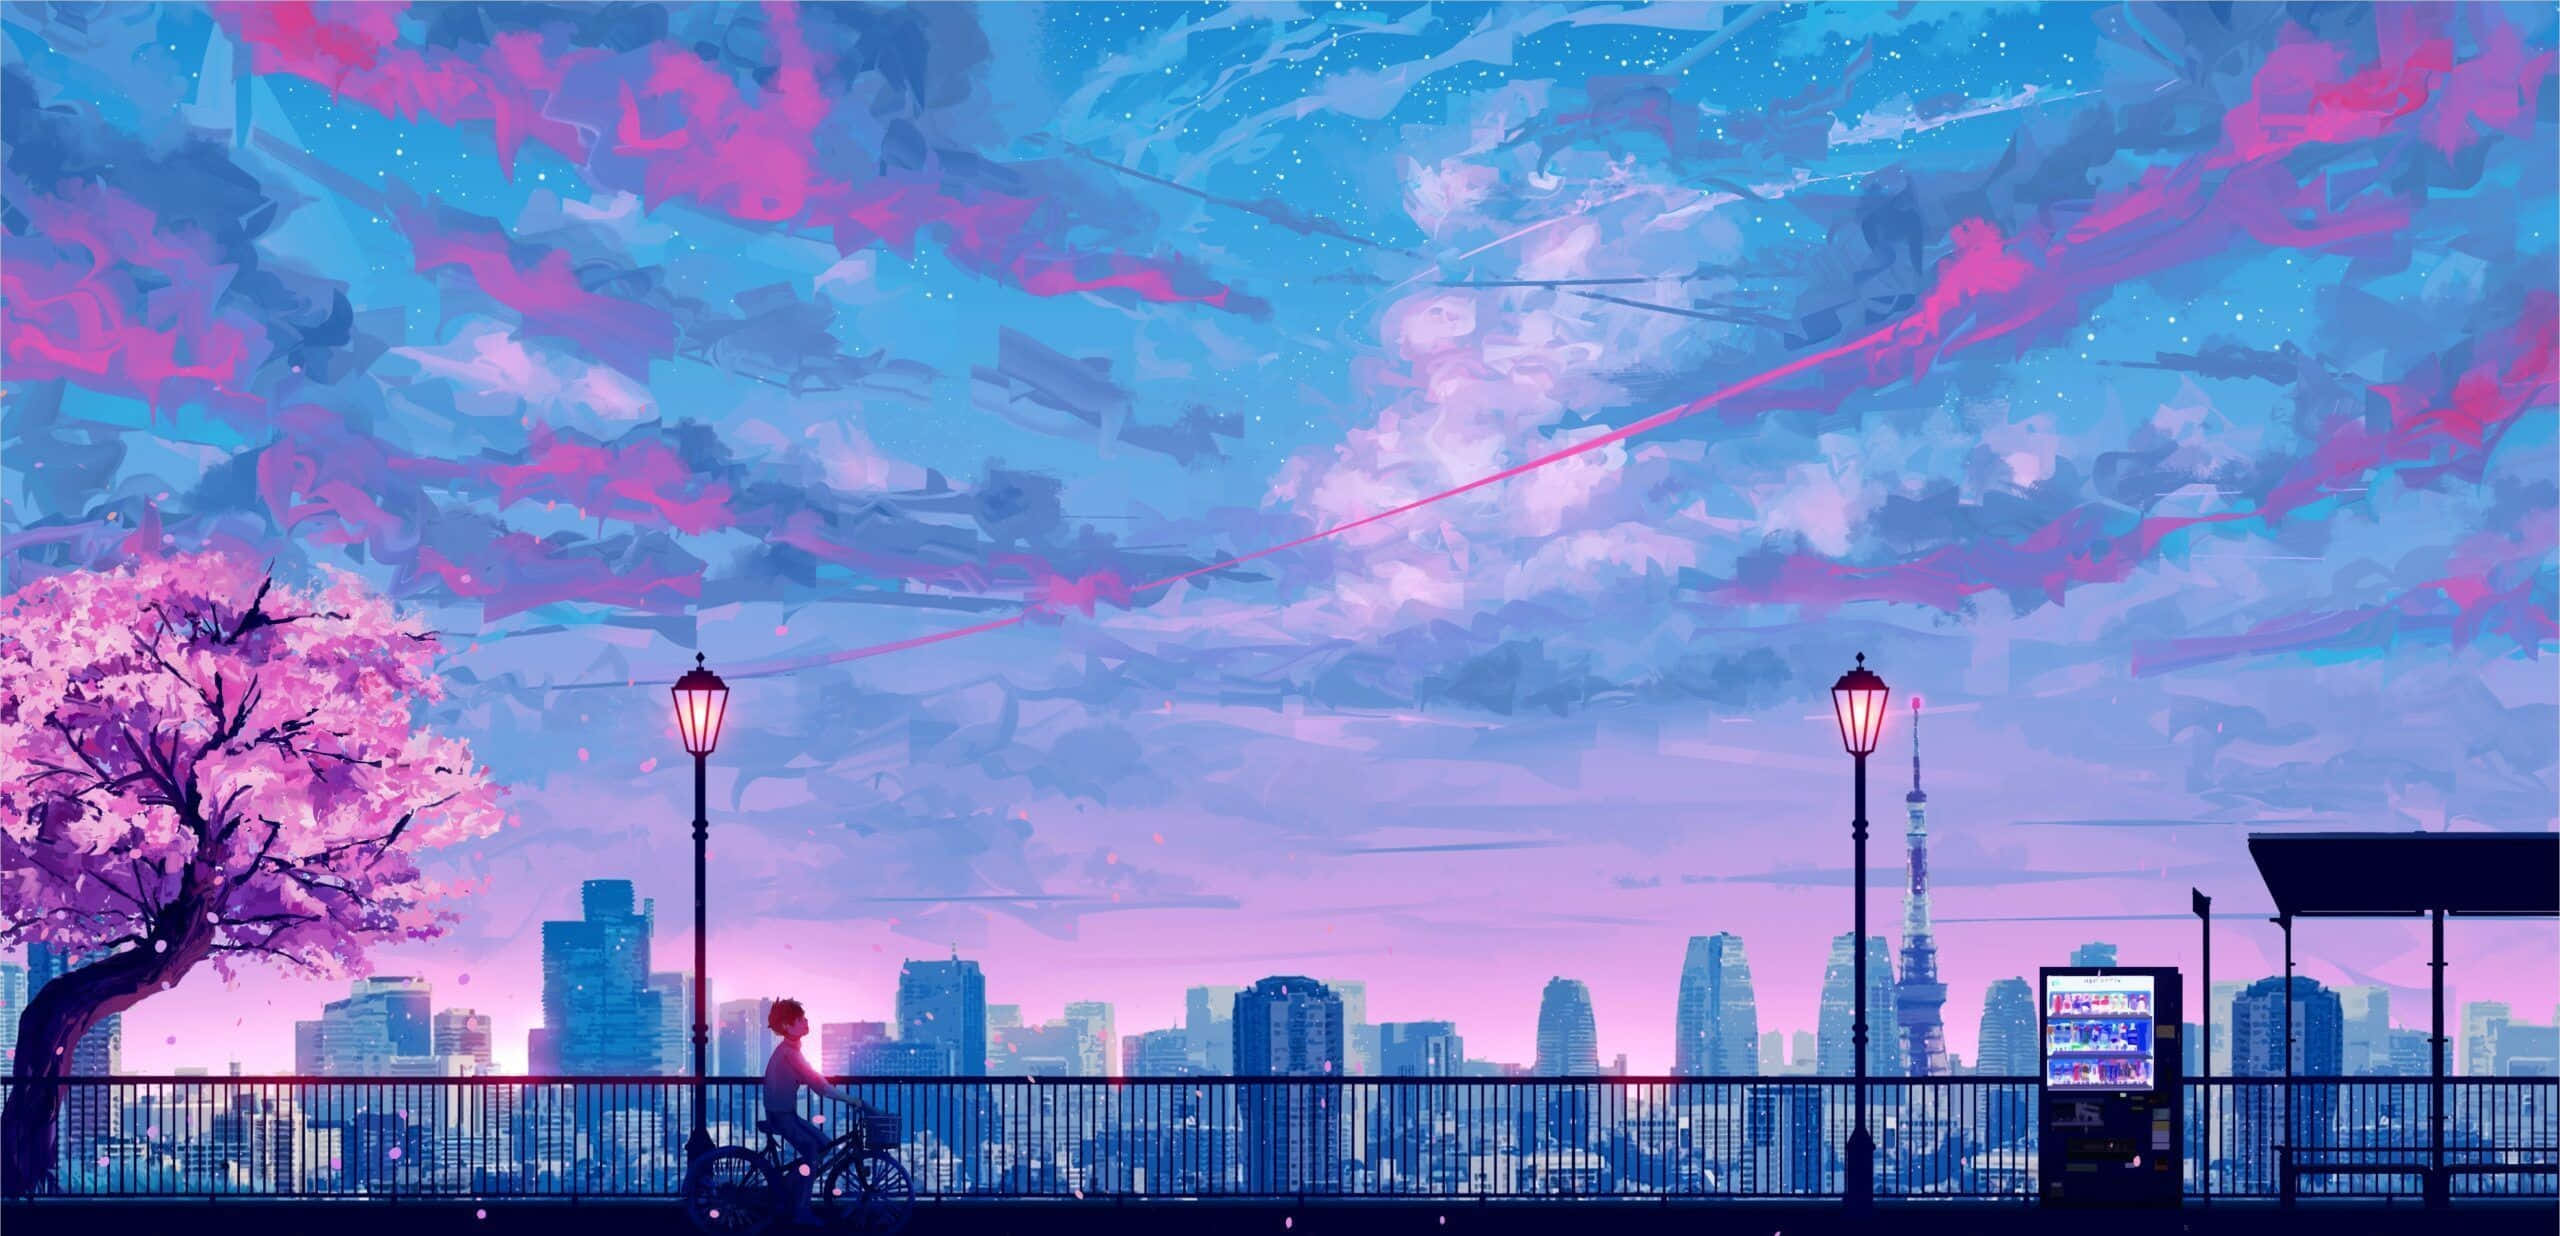 Imágenesestéticas De Anime En Color Rosa.